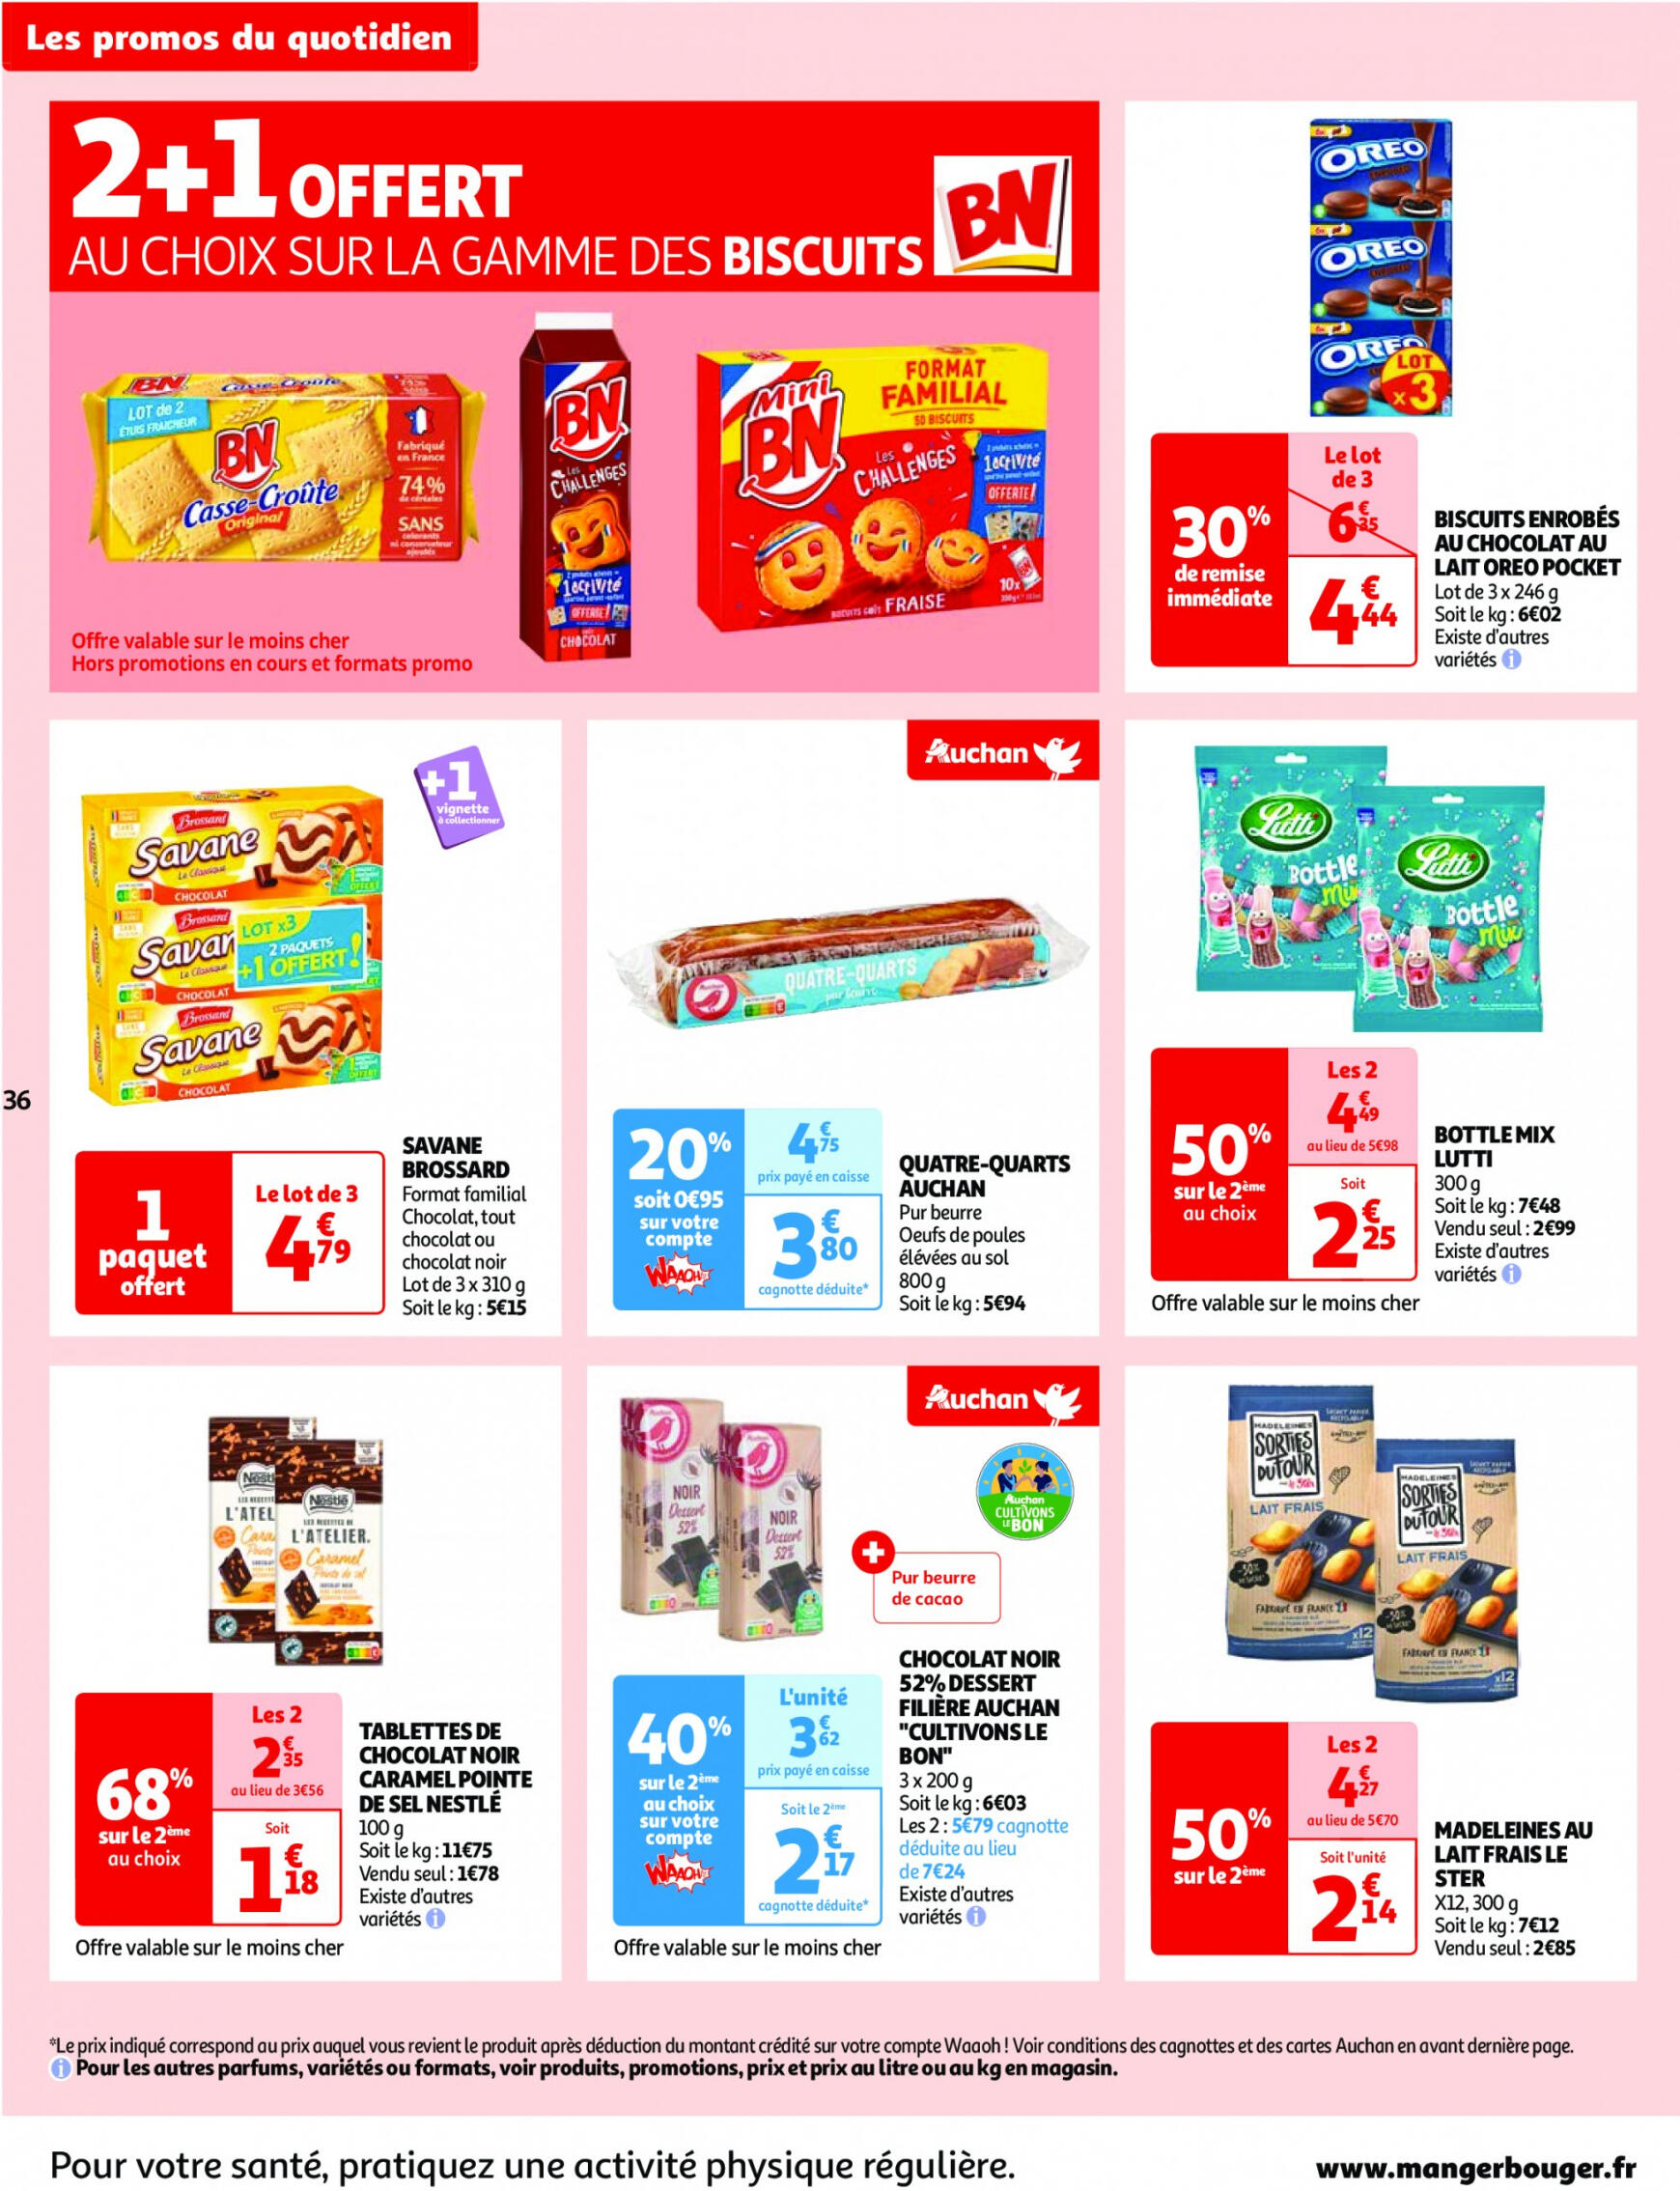 auchan - Auchan - Nos surgelés ont tout bon folder huidig 14.05. - 21.05. - page: 36